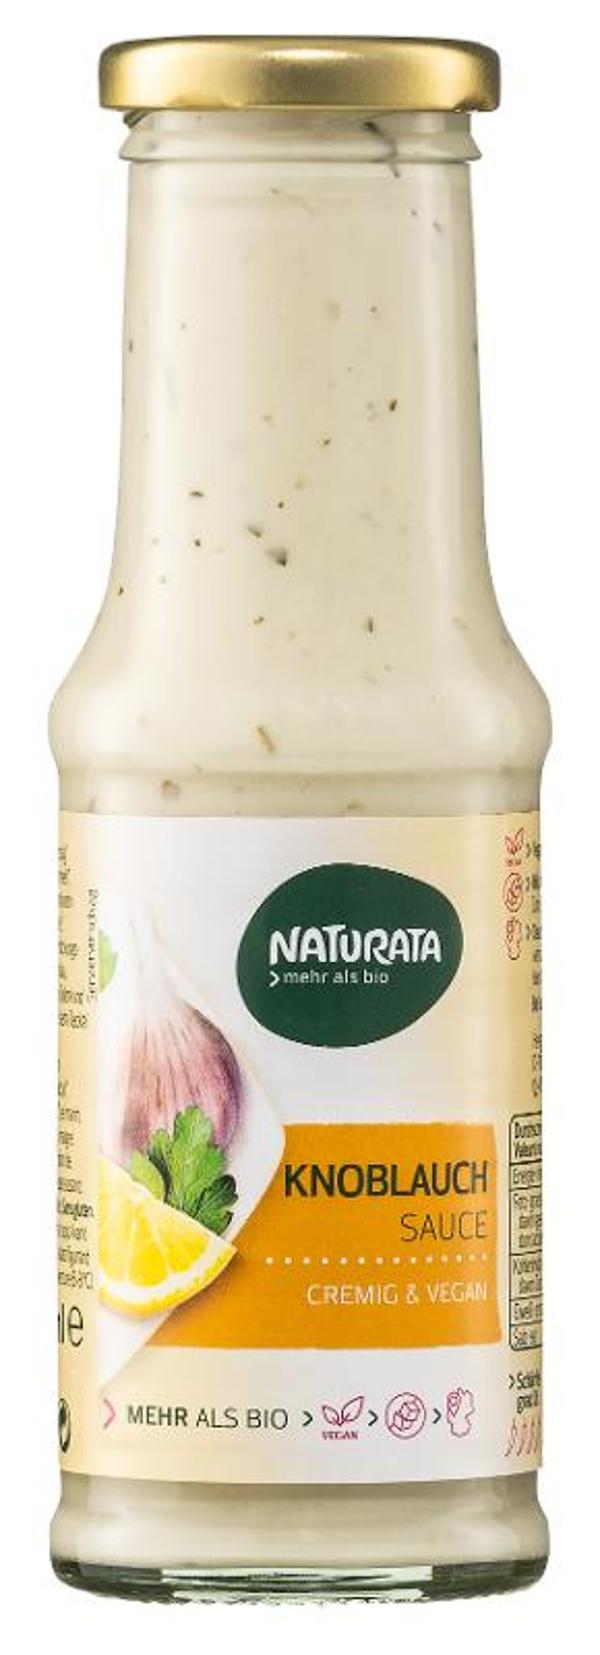 Produktfoto zu Knoblauch Sauce von Naturata